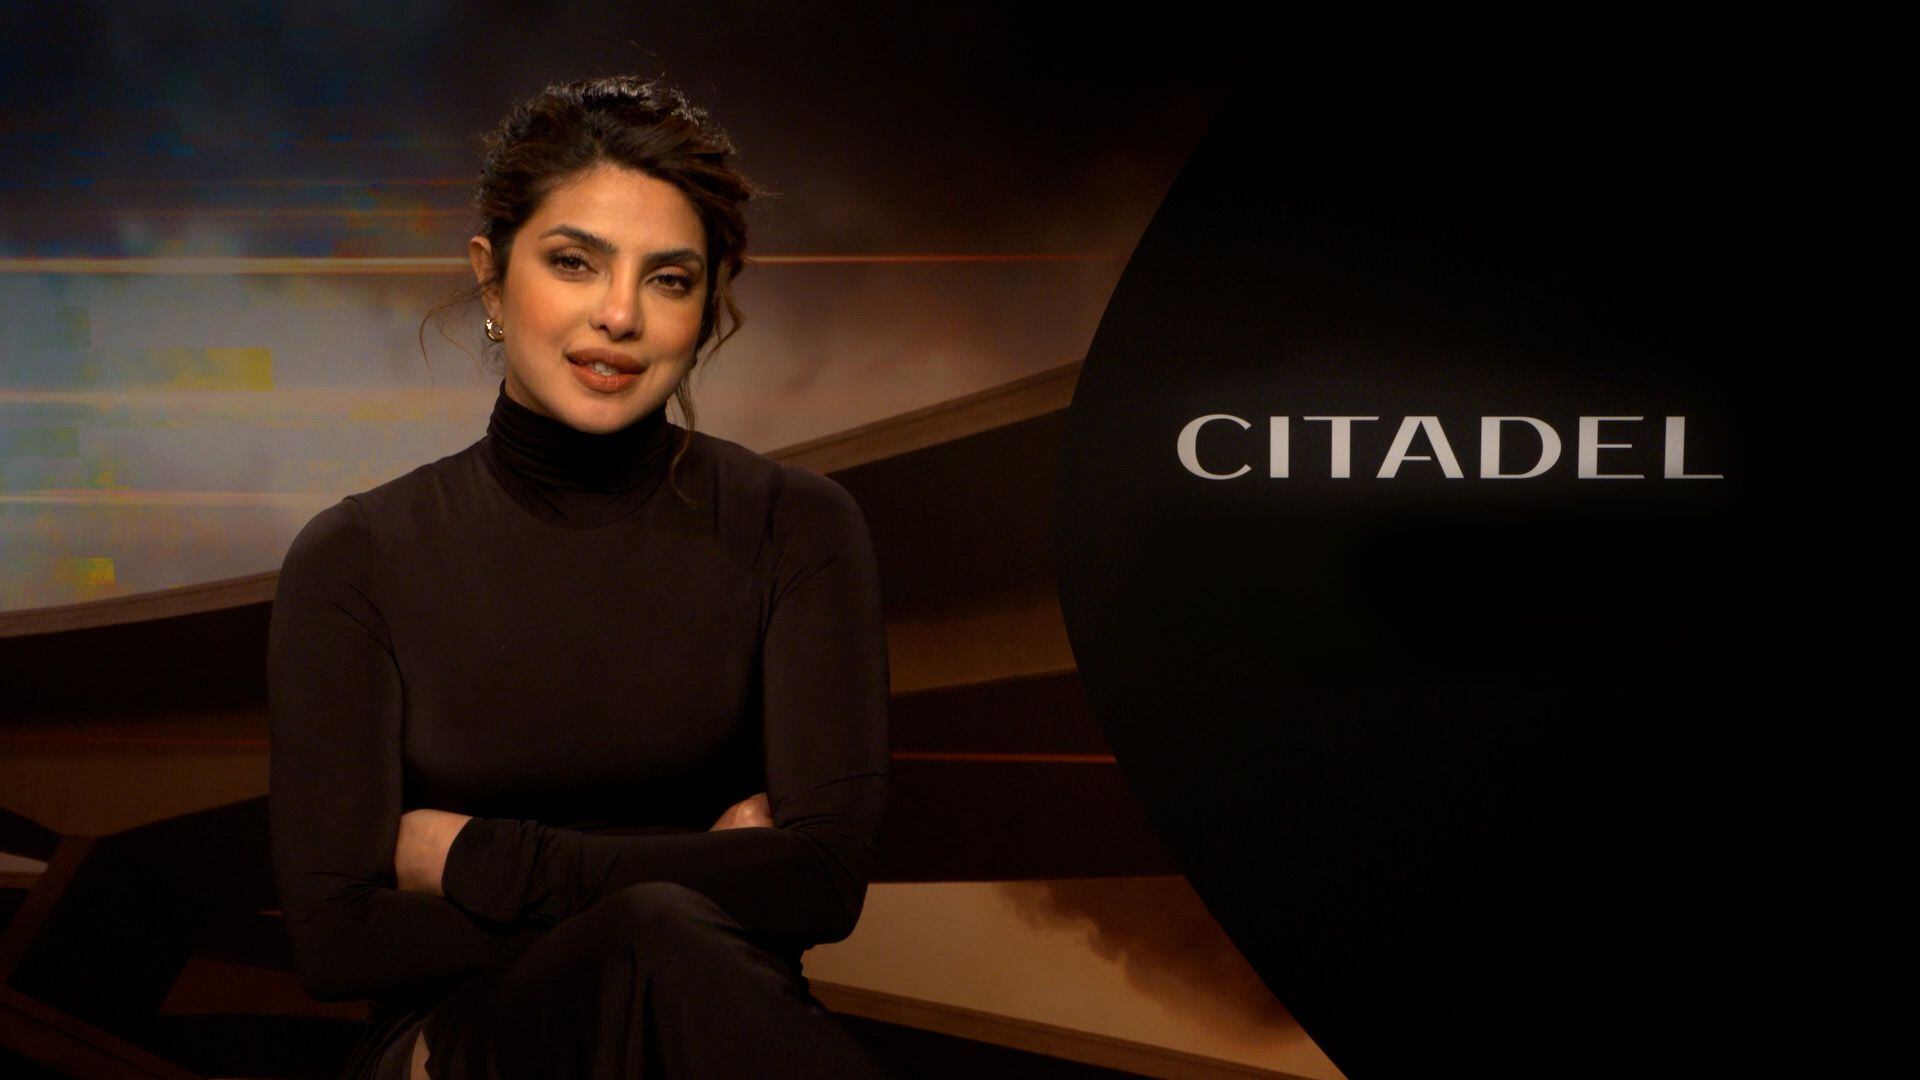 Priyanka Chopra Jonas sobre "Citadel": "Pone la vara muy alta para el entretenimiento"